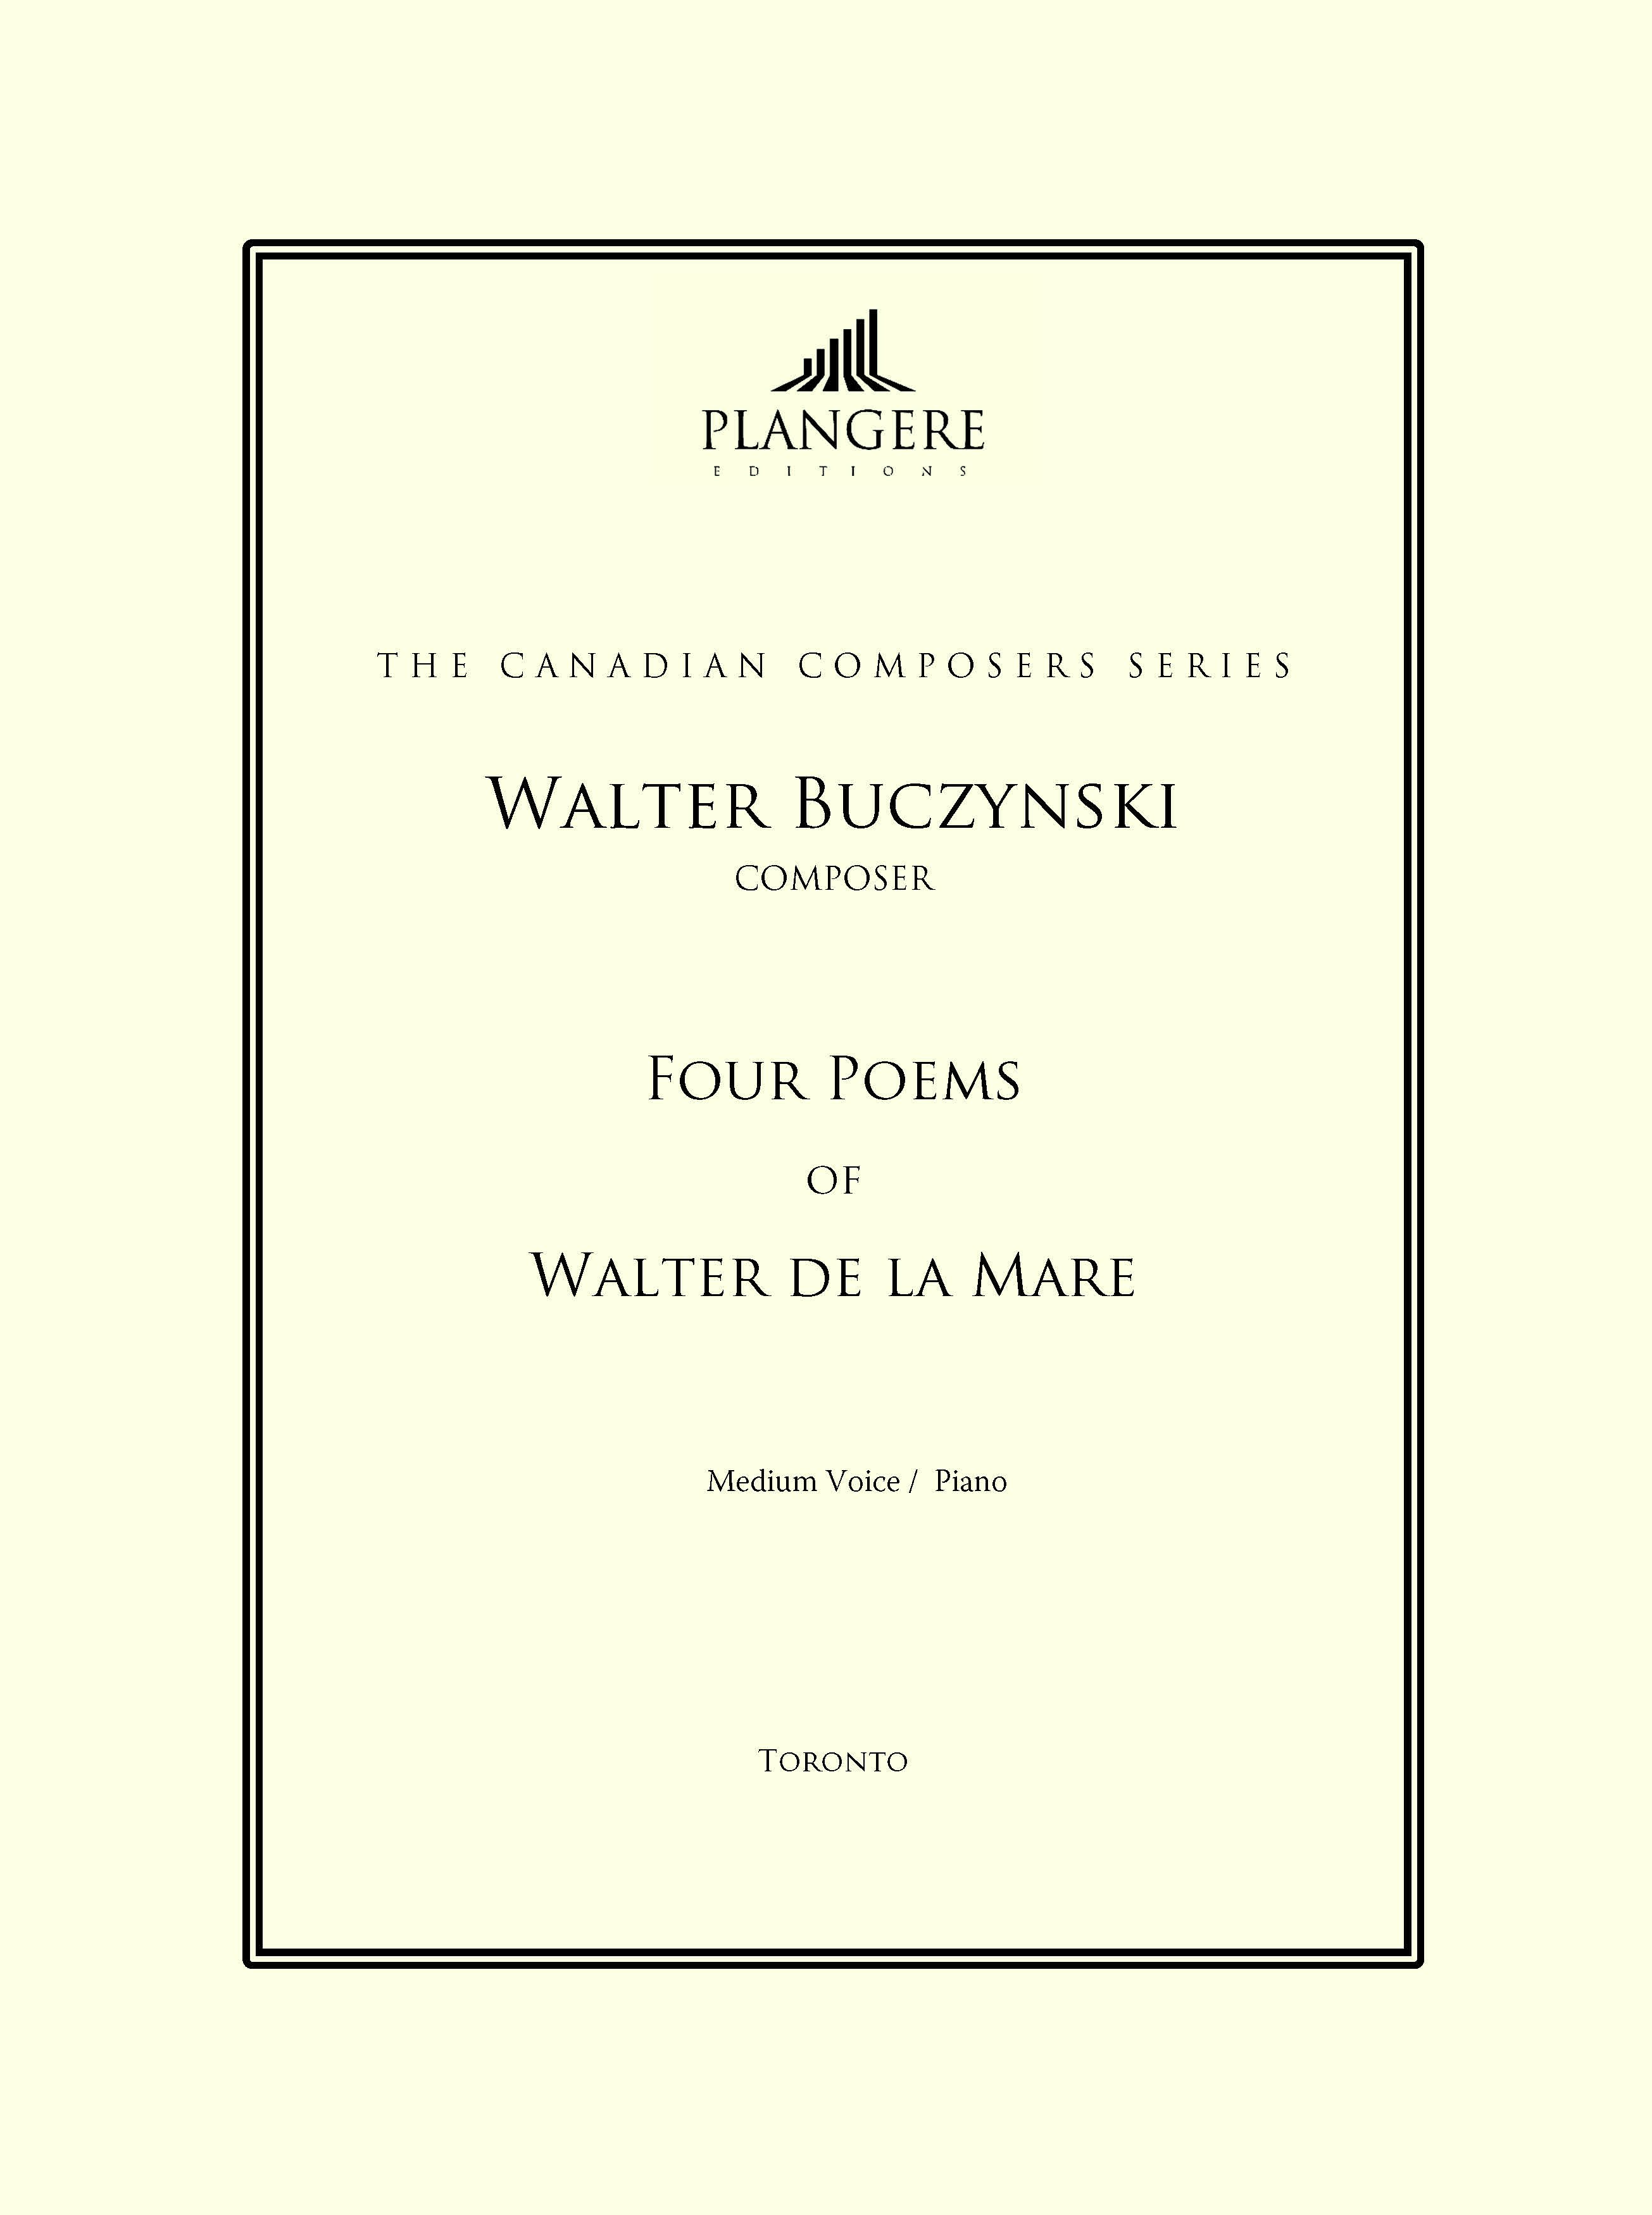 Four Poems of Walter de la Mare